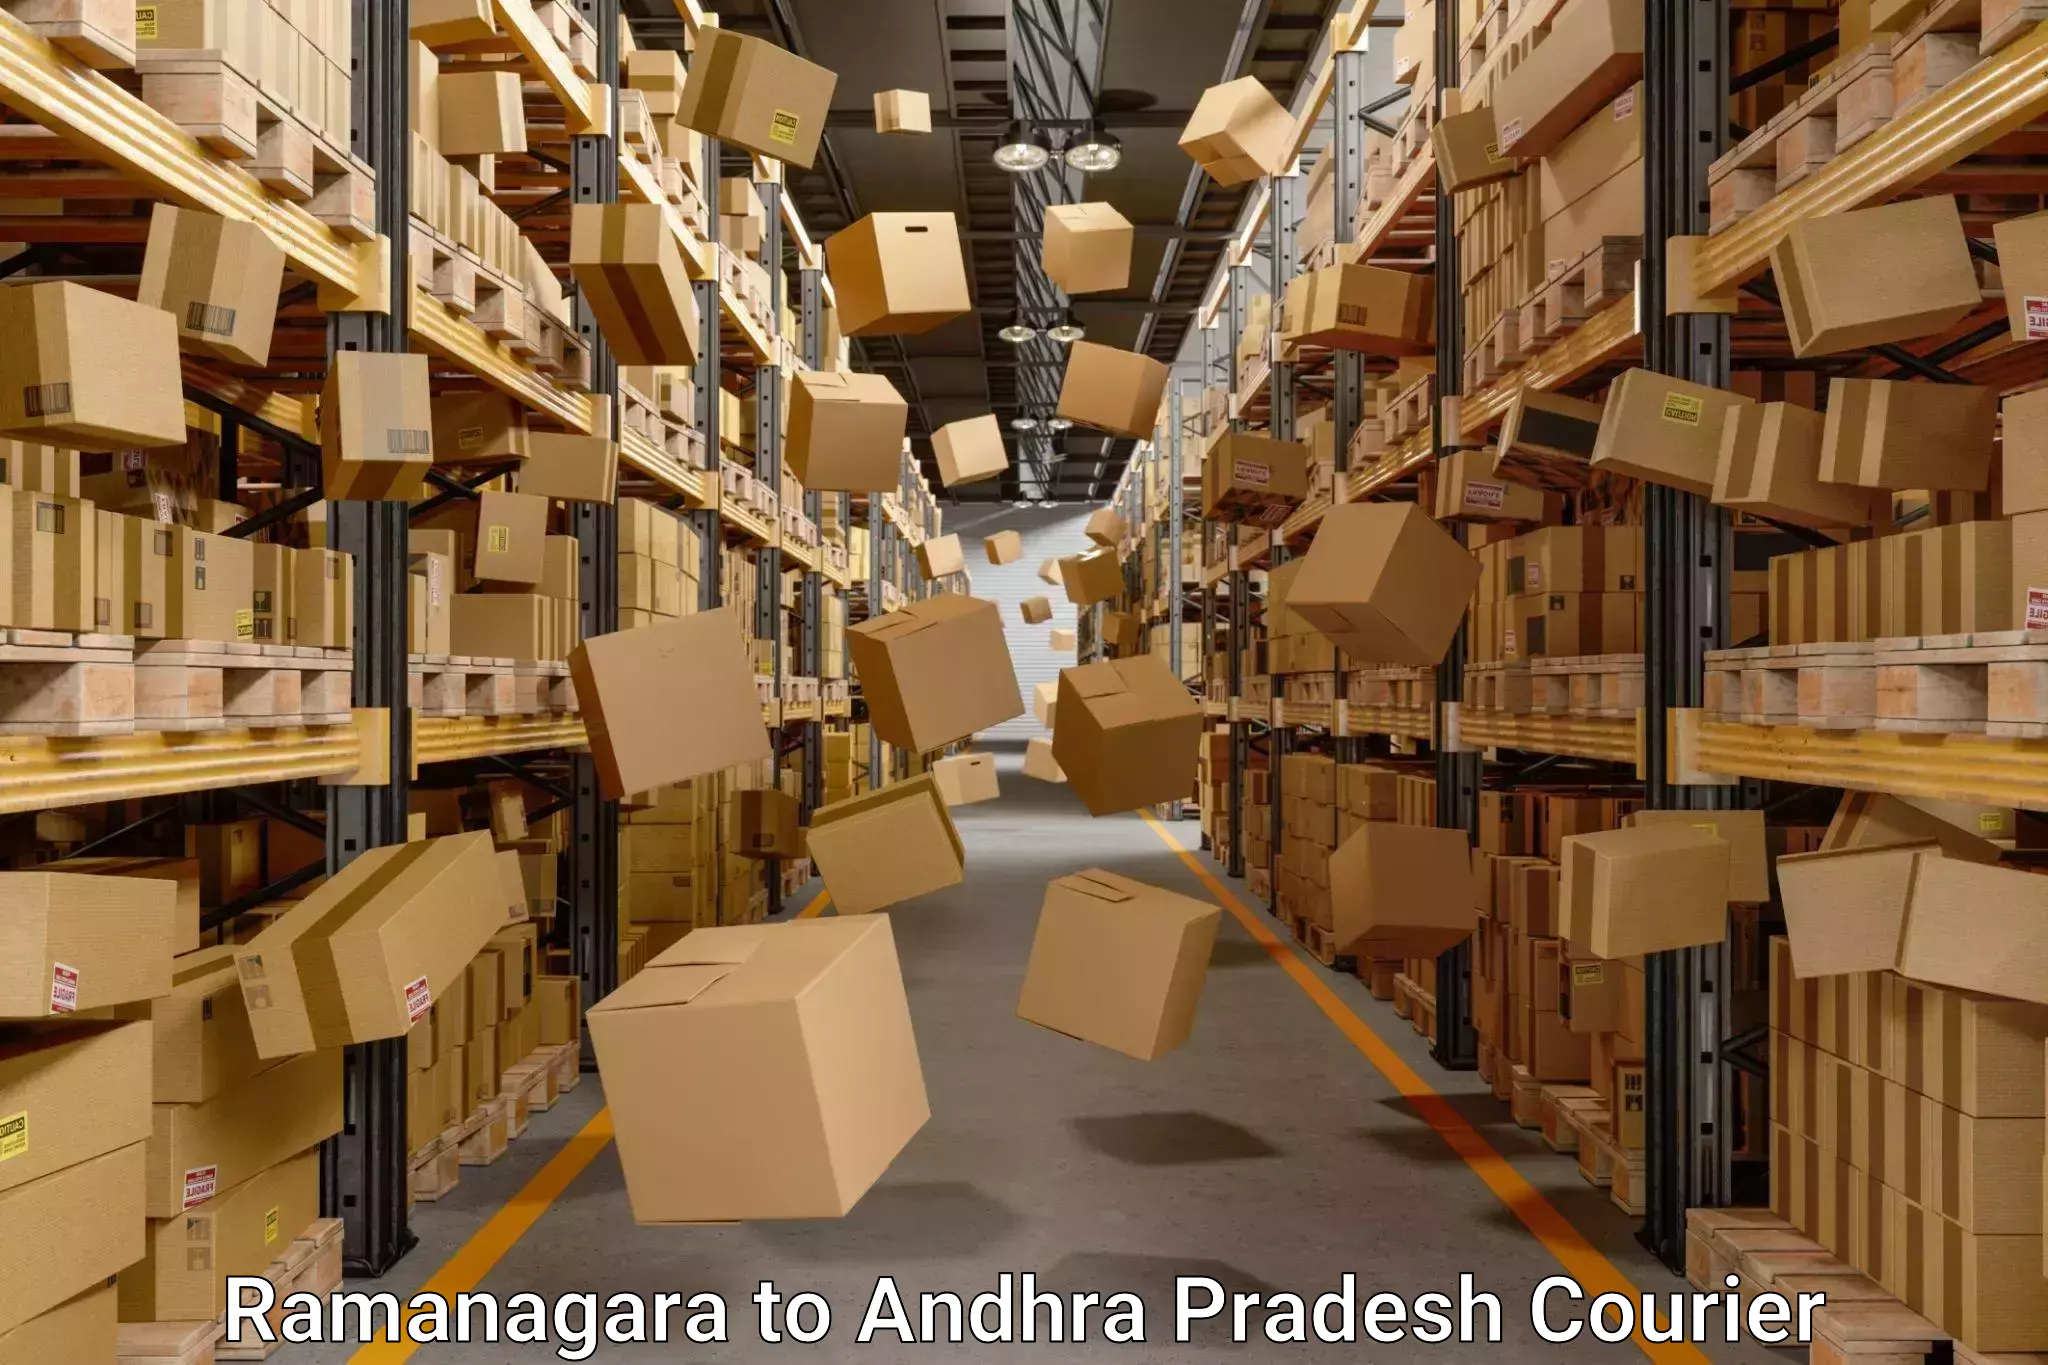 Efficient packing and moving Ramanagara to Andhra Pradesh